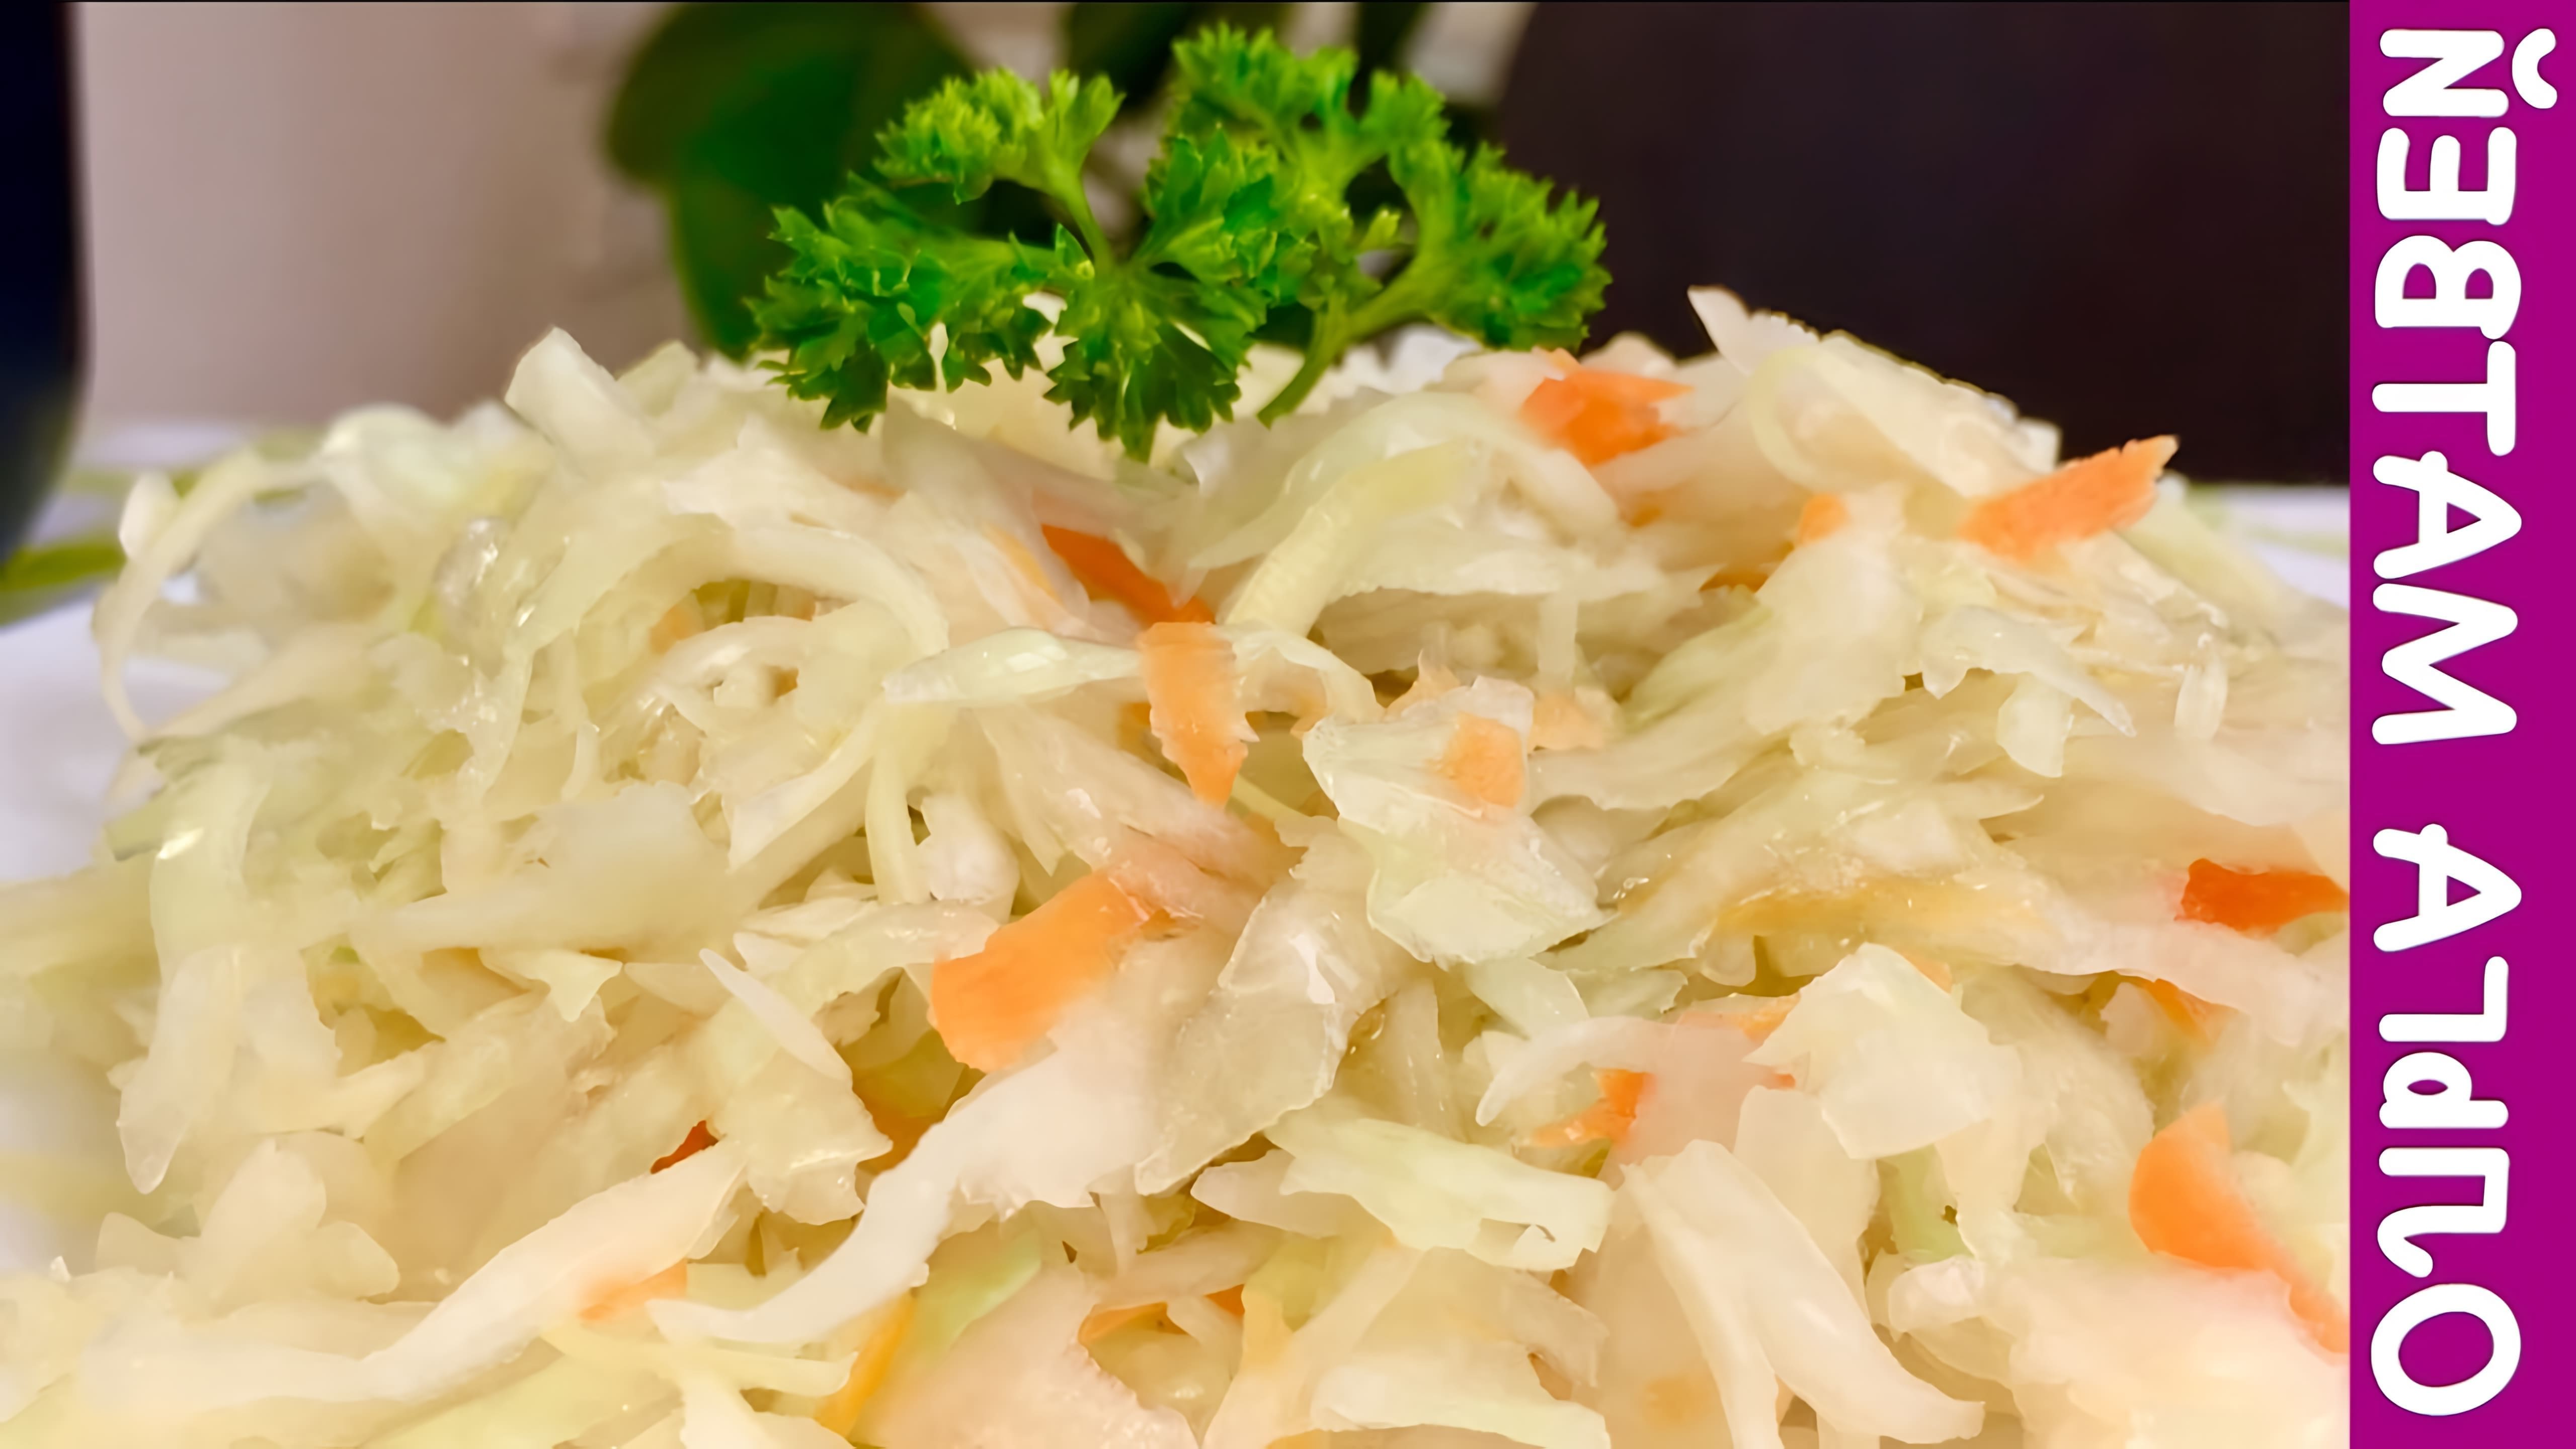 В этом видео Ольга Матвей показывает, как приготовить квашеную капусту в собственном соку